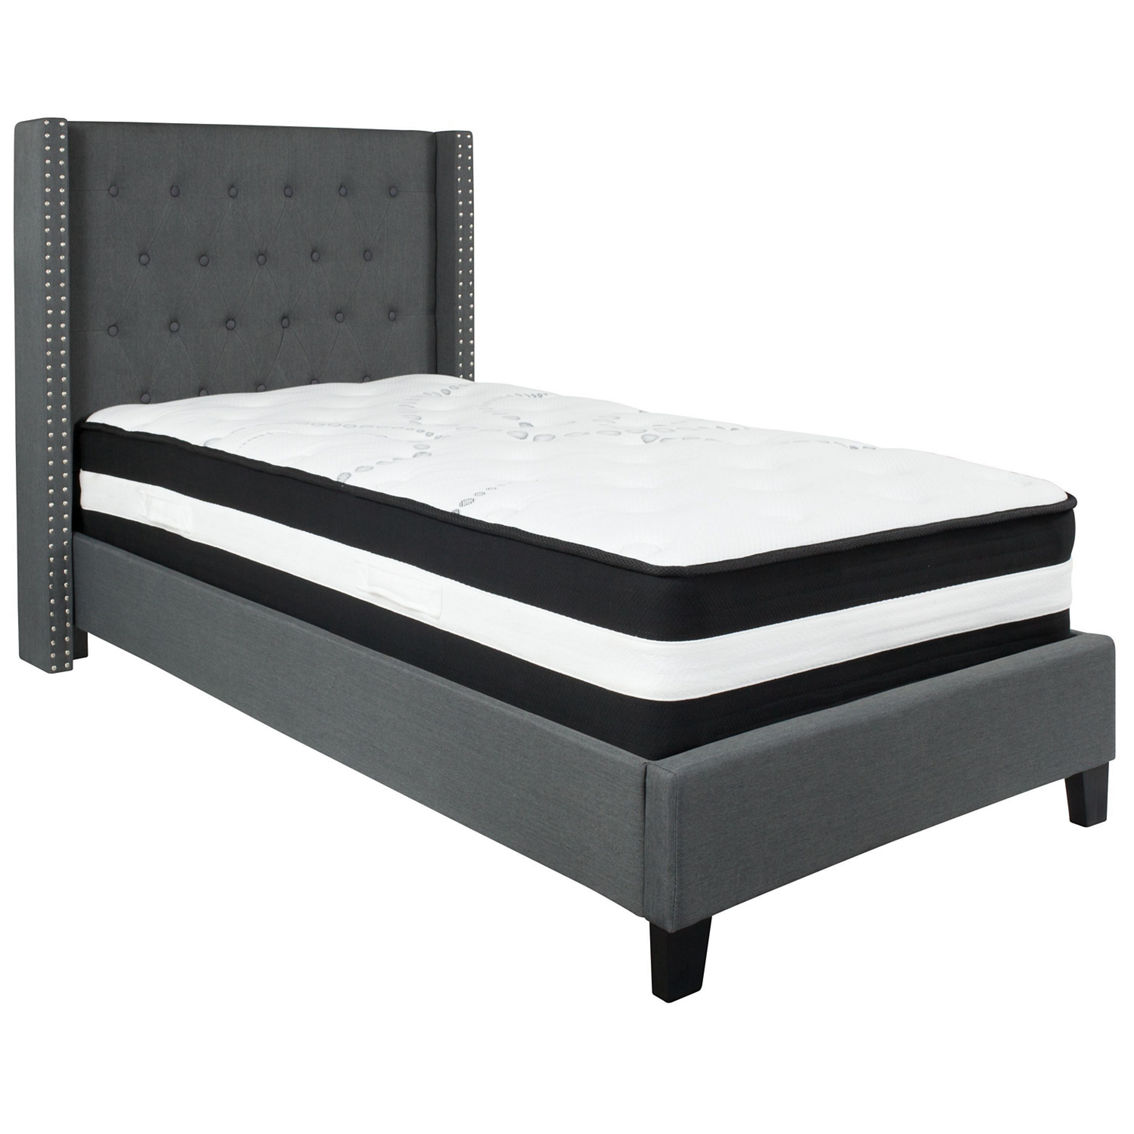 Flash Furniture Platform Bed with Pocket Spring Mattress - Image 2 of 5